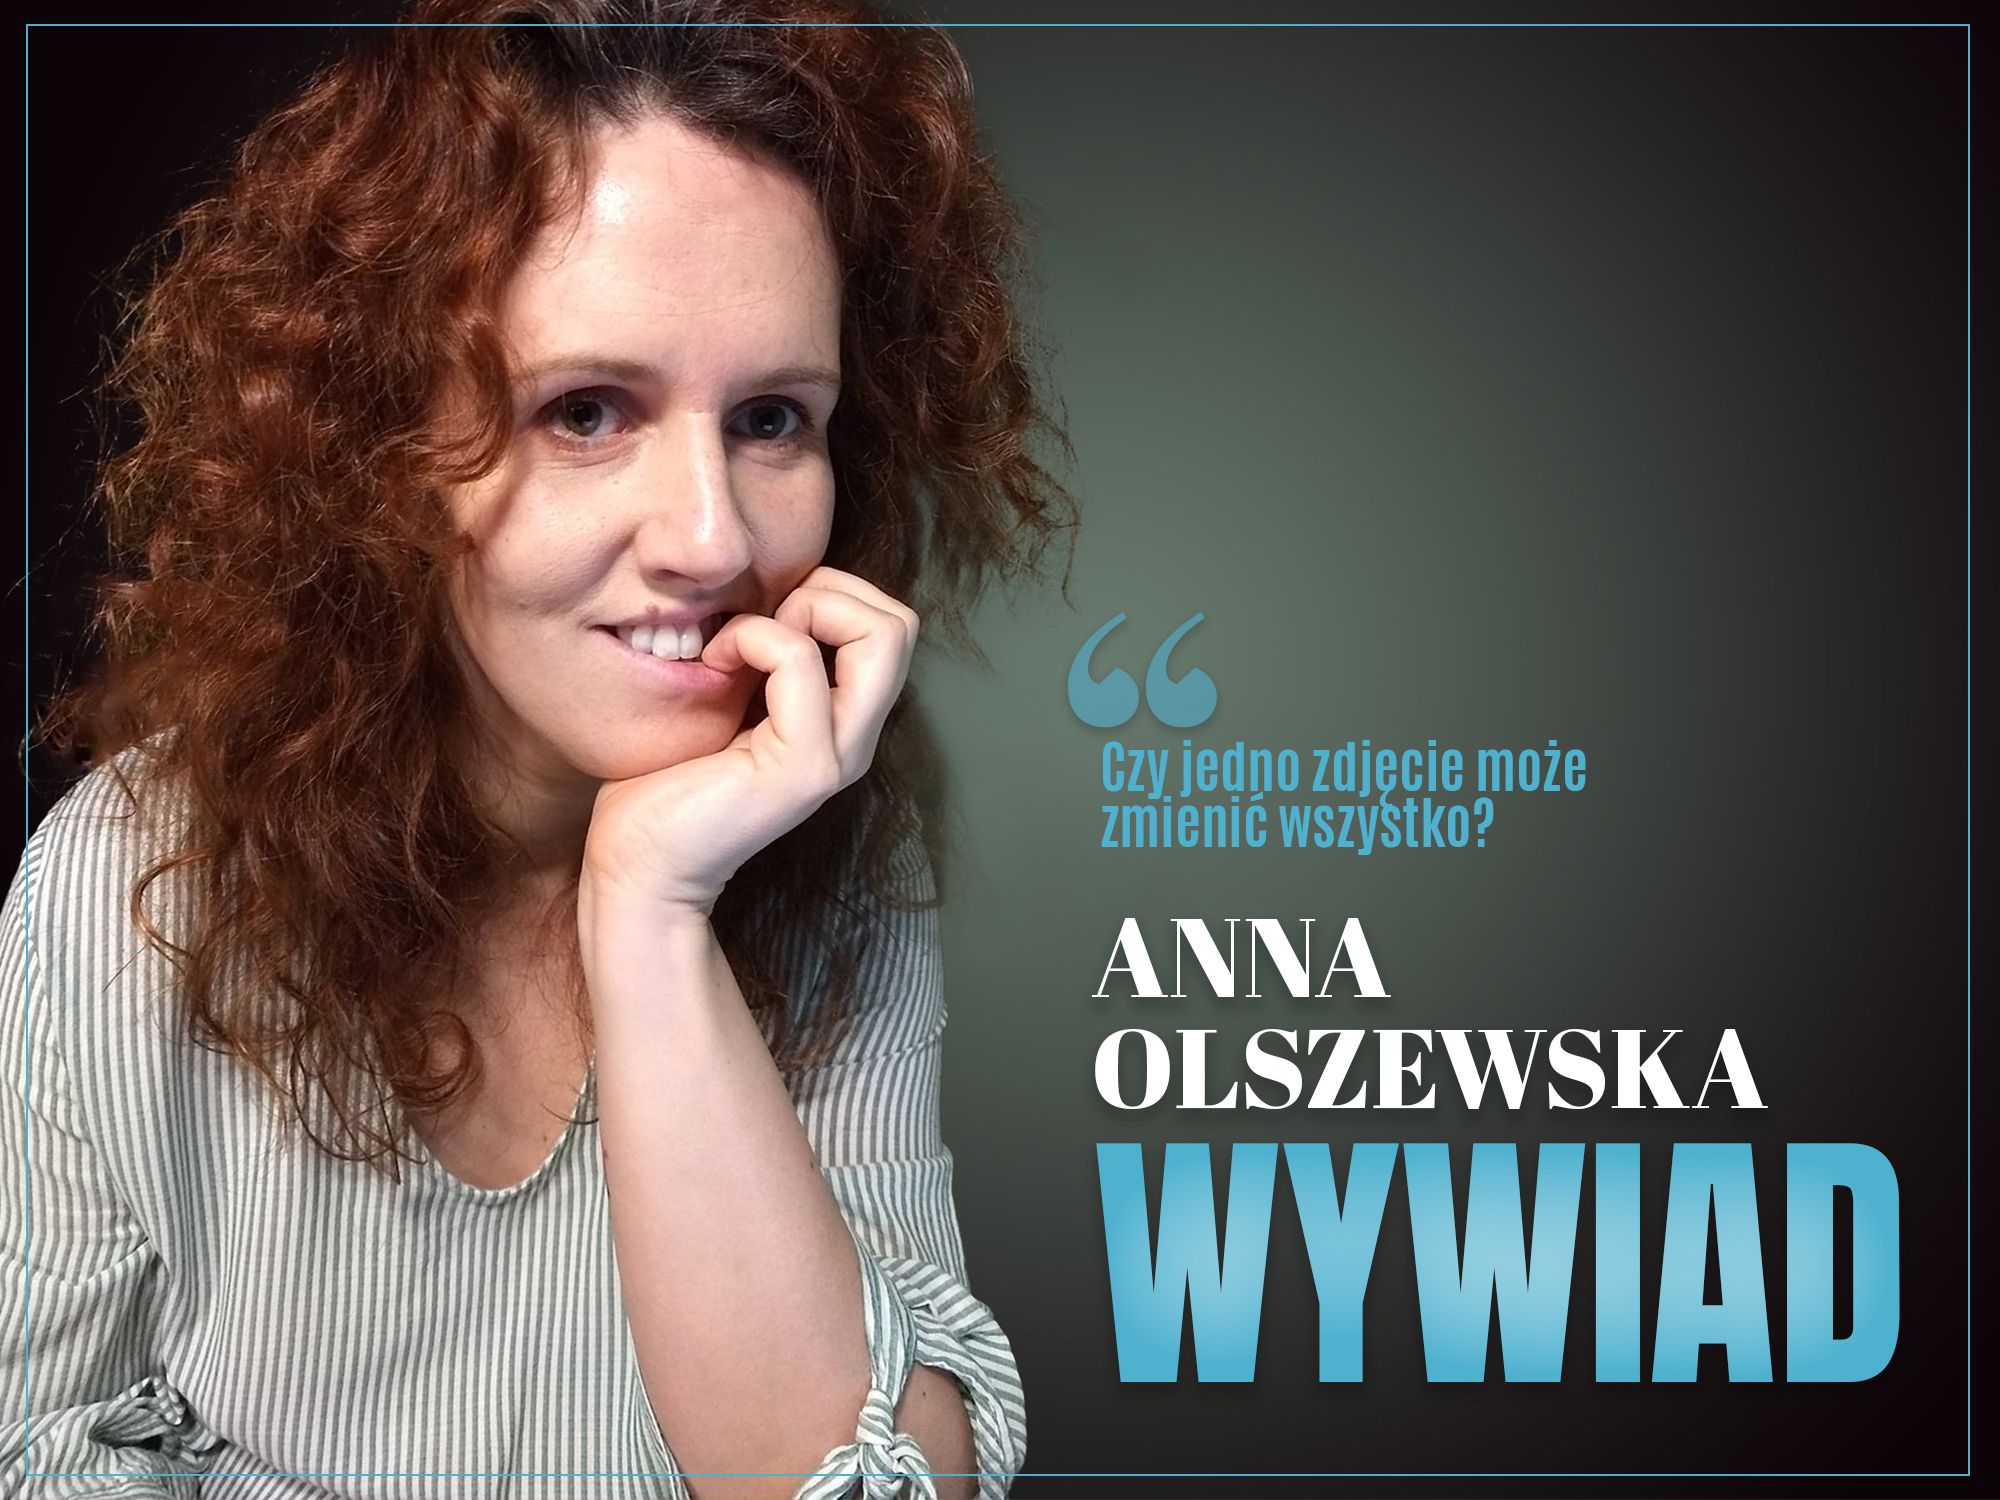 Anna Olszewska - WYWIAD, zaczytanyksia